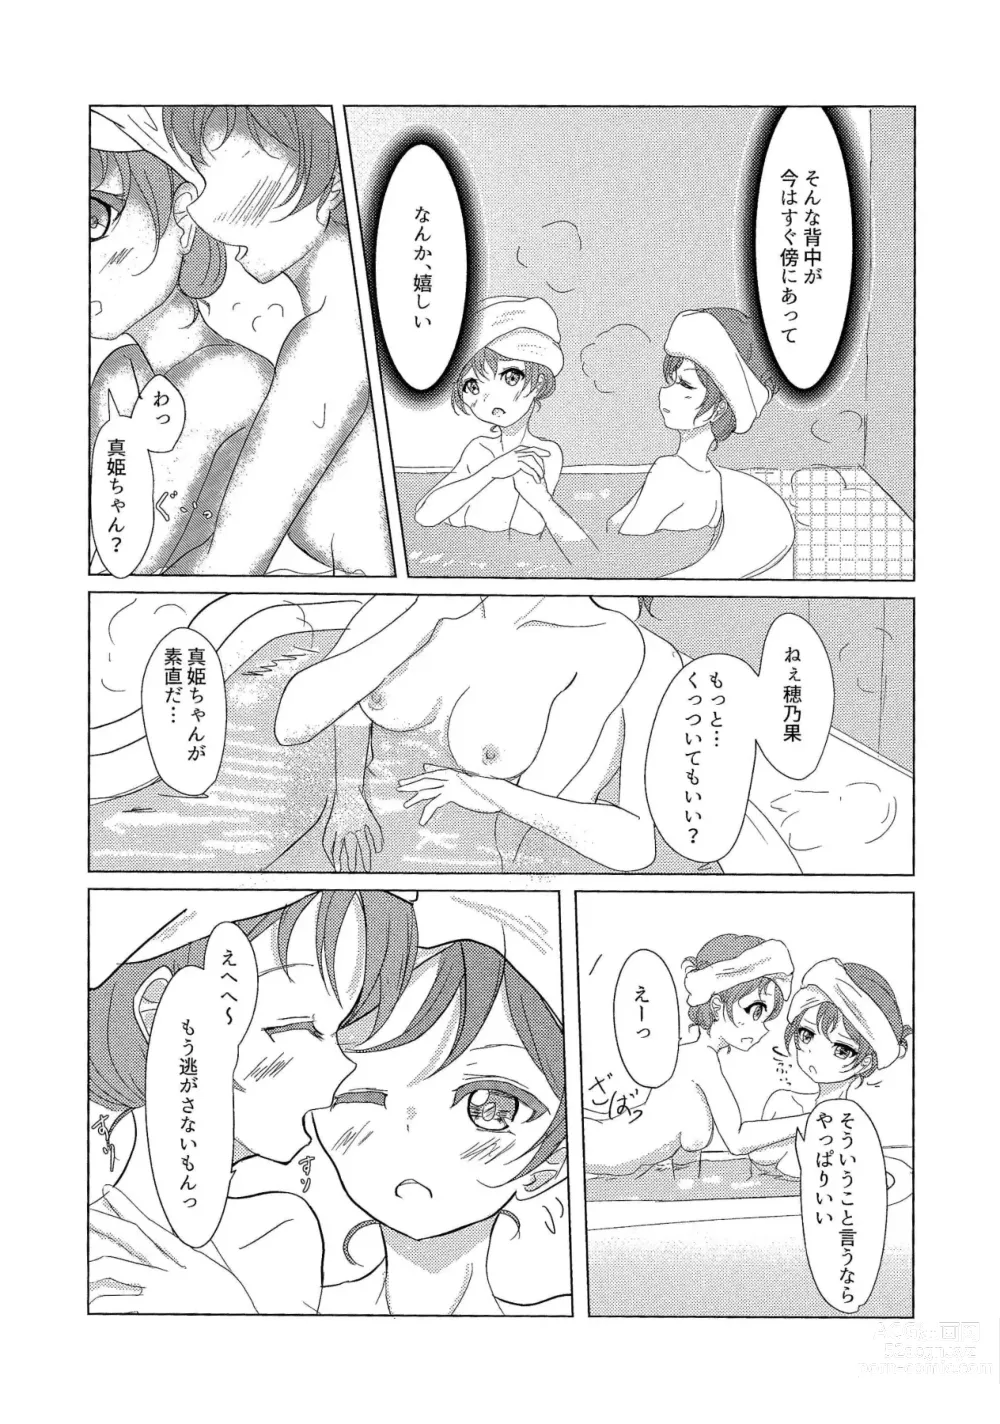 Page 12 of doujinshi ”I” o Kanadete Sono Yubi de